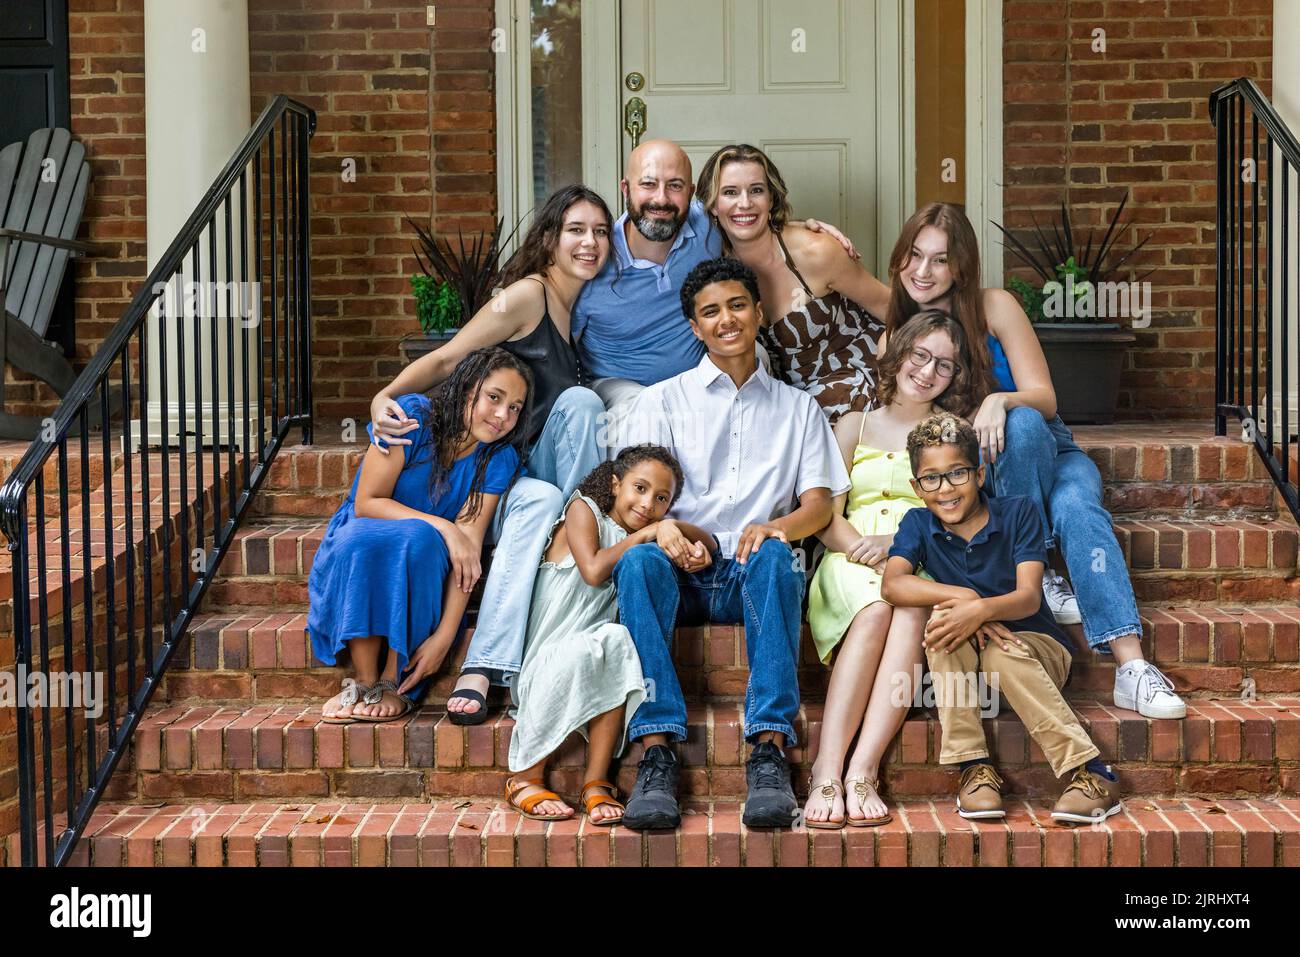 Eine große, gemischte und glückliche Familie, die auf den vorderen Stufen ihres Backsteinhauses in den Vororten sitzt Stockfoto